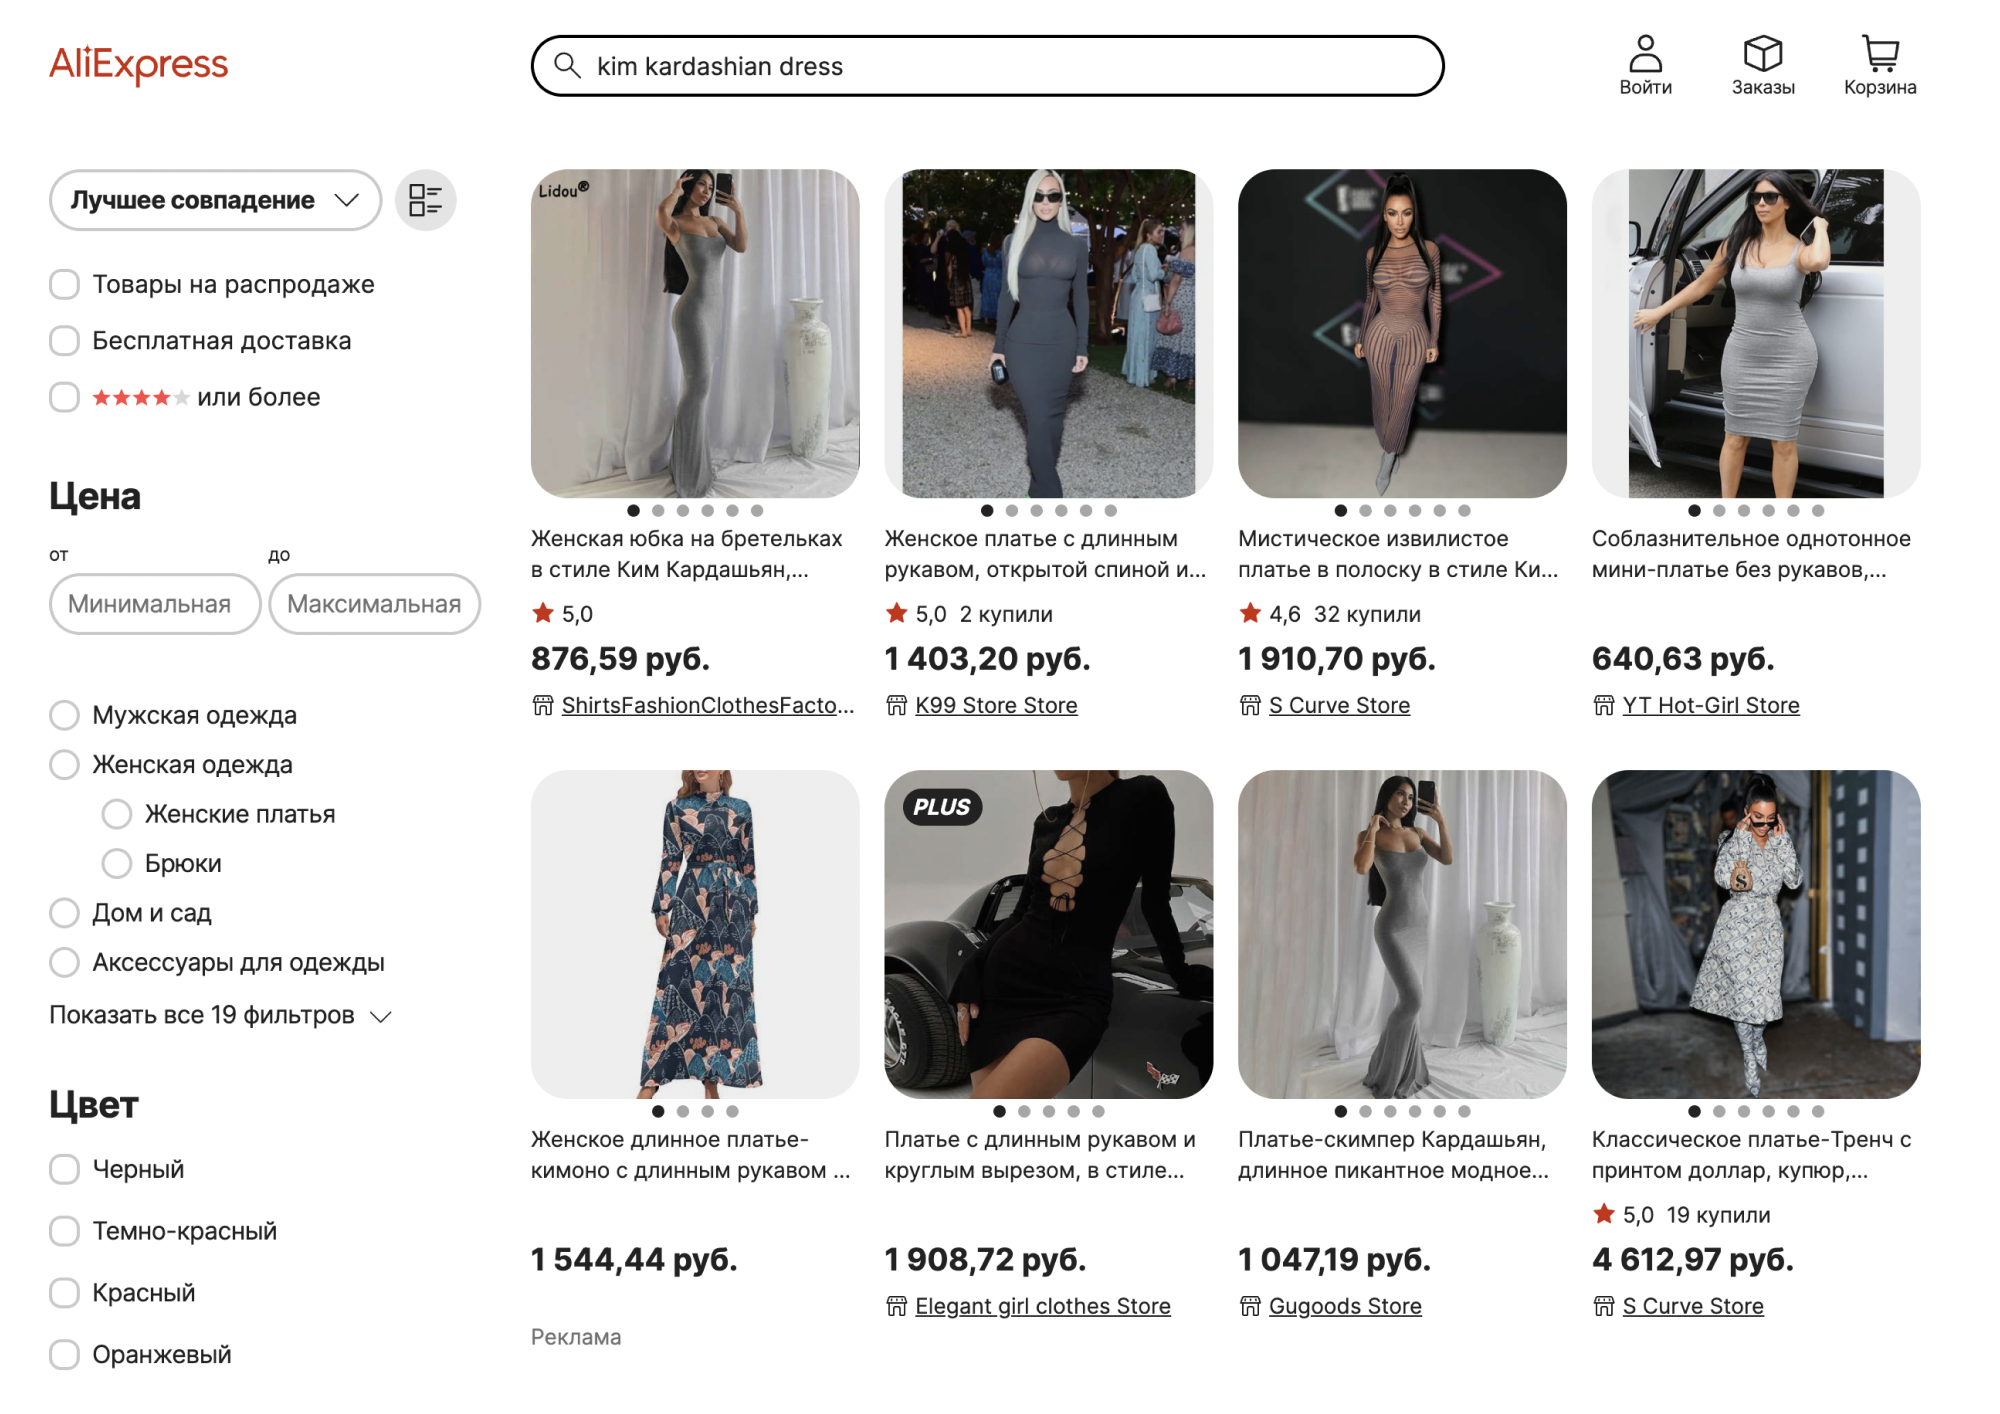 По запросу Kim Kardashian dress найдутся тысячи нарядов в духе тех, что носит звезда. Иногда это почти копии ее нарядов или вольные интерпретации